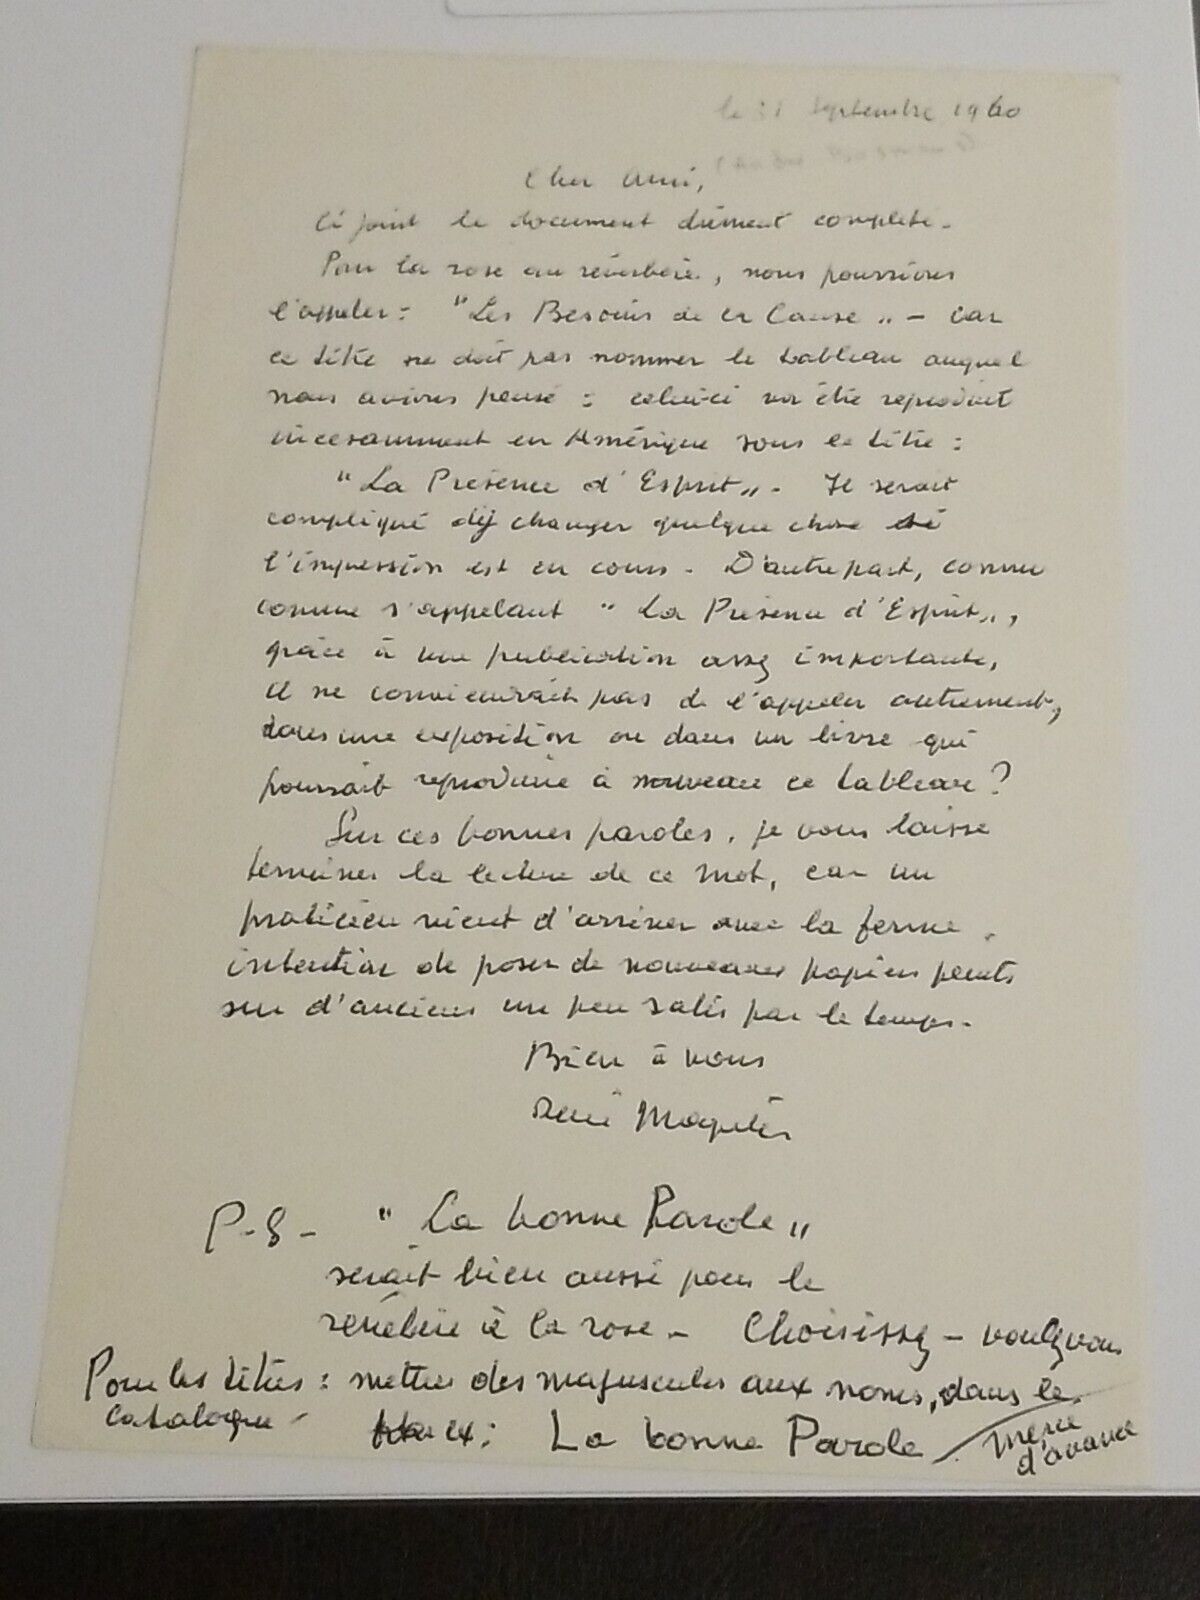 Rene Magritte Famous Artist signed letter Good Content PSA DNA Autograph Auto